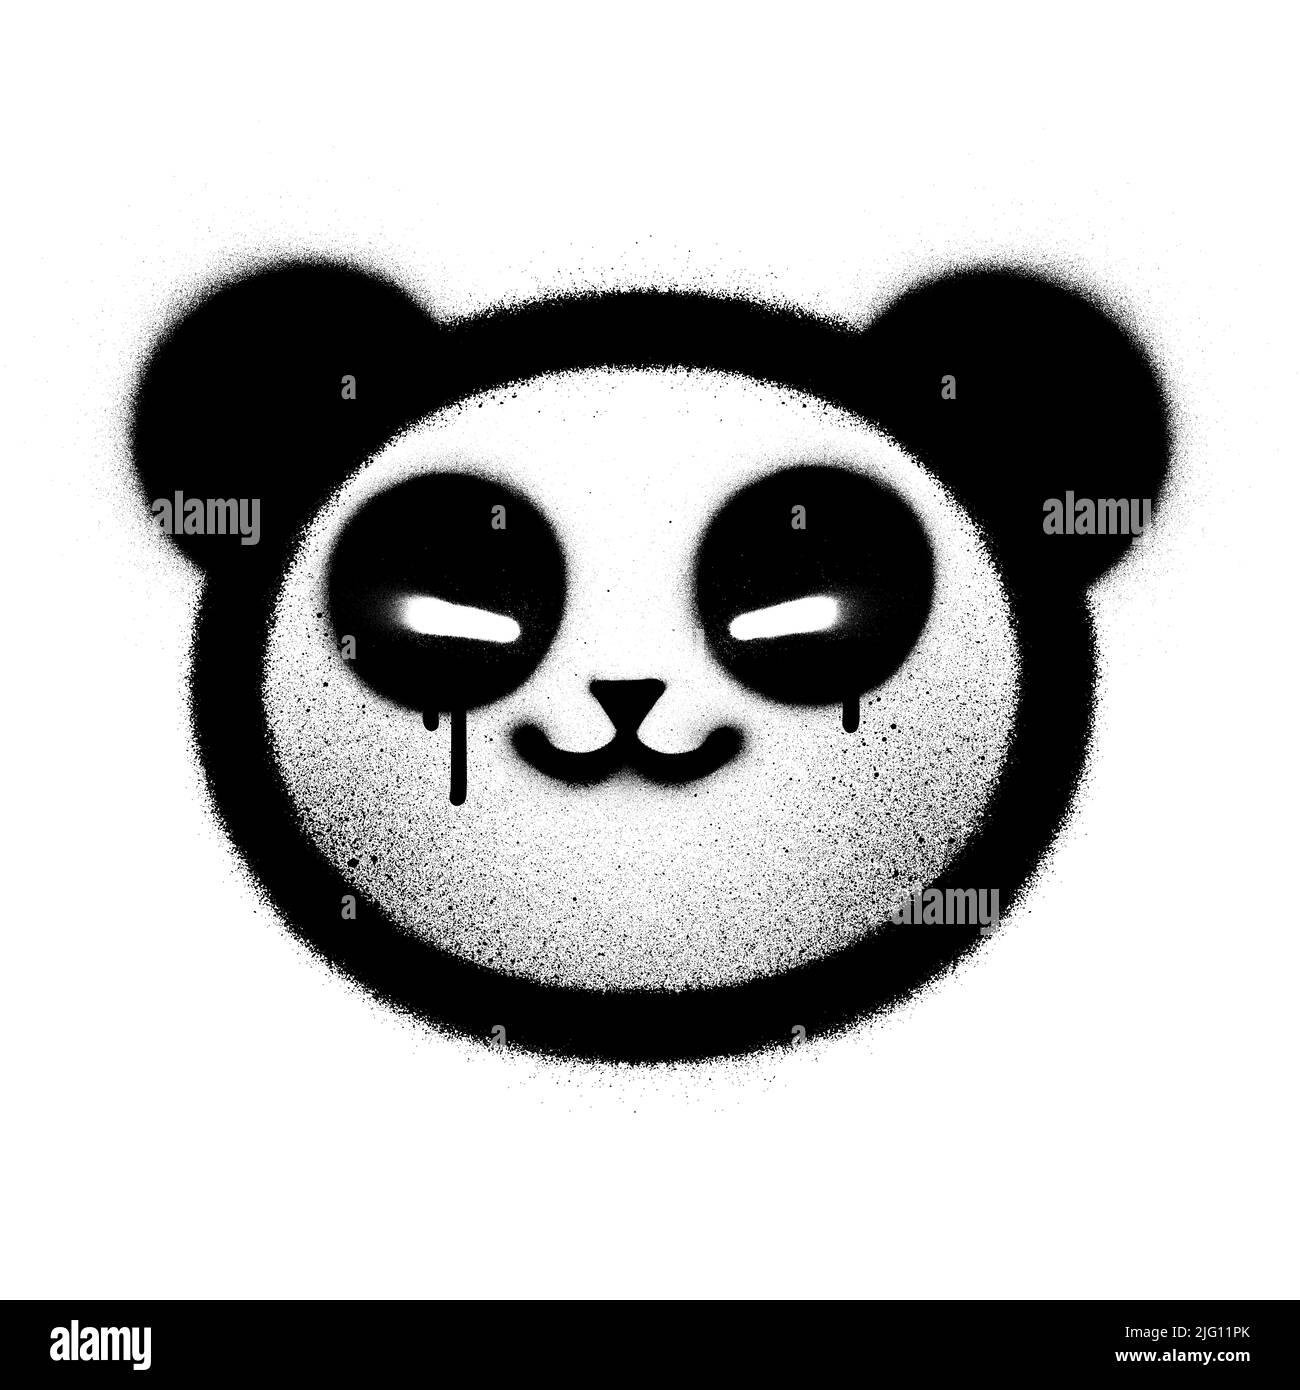 graffiti panda sprayed in black over white Stock Vector